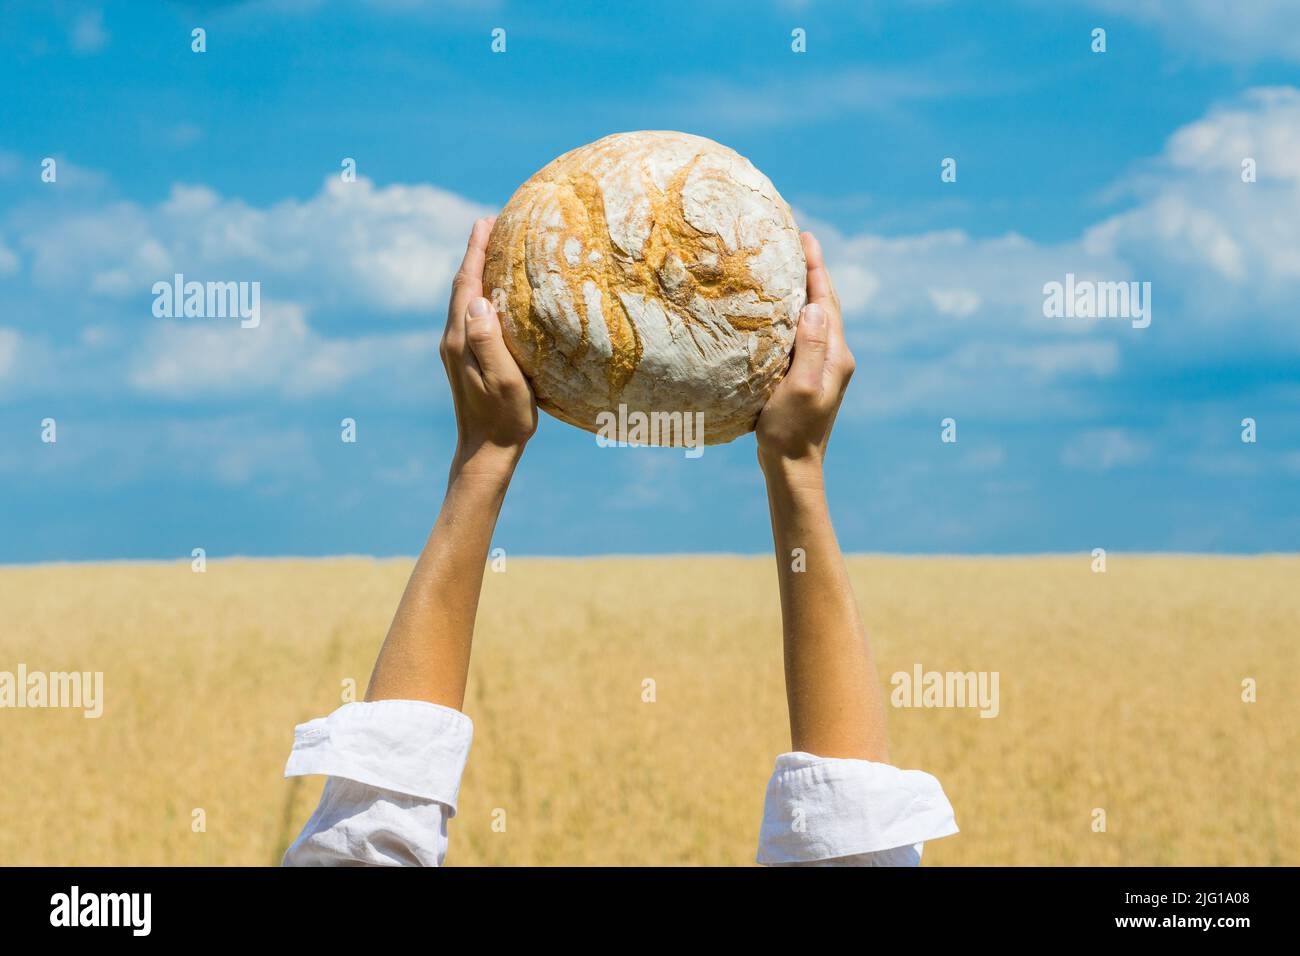 Des mains de femmes tenant un pain cuit maison au-dessus de sa tête sur un ciel bleu d'été dans un champ de blé. Concept de sécurité alimentaire mondiale. Banque D'Images